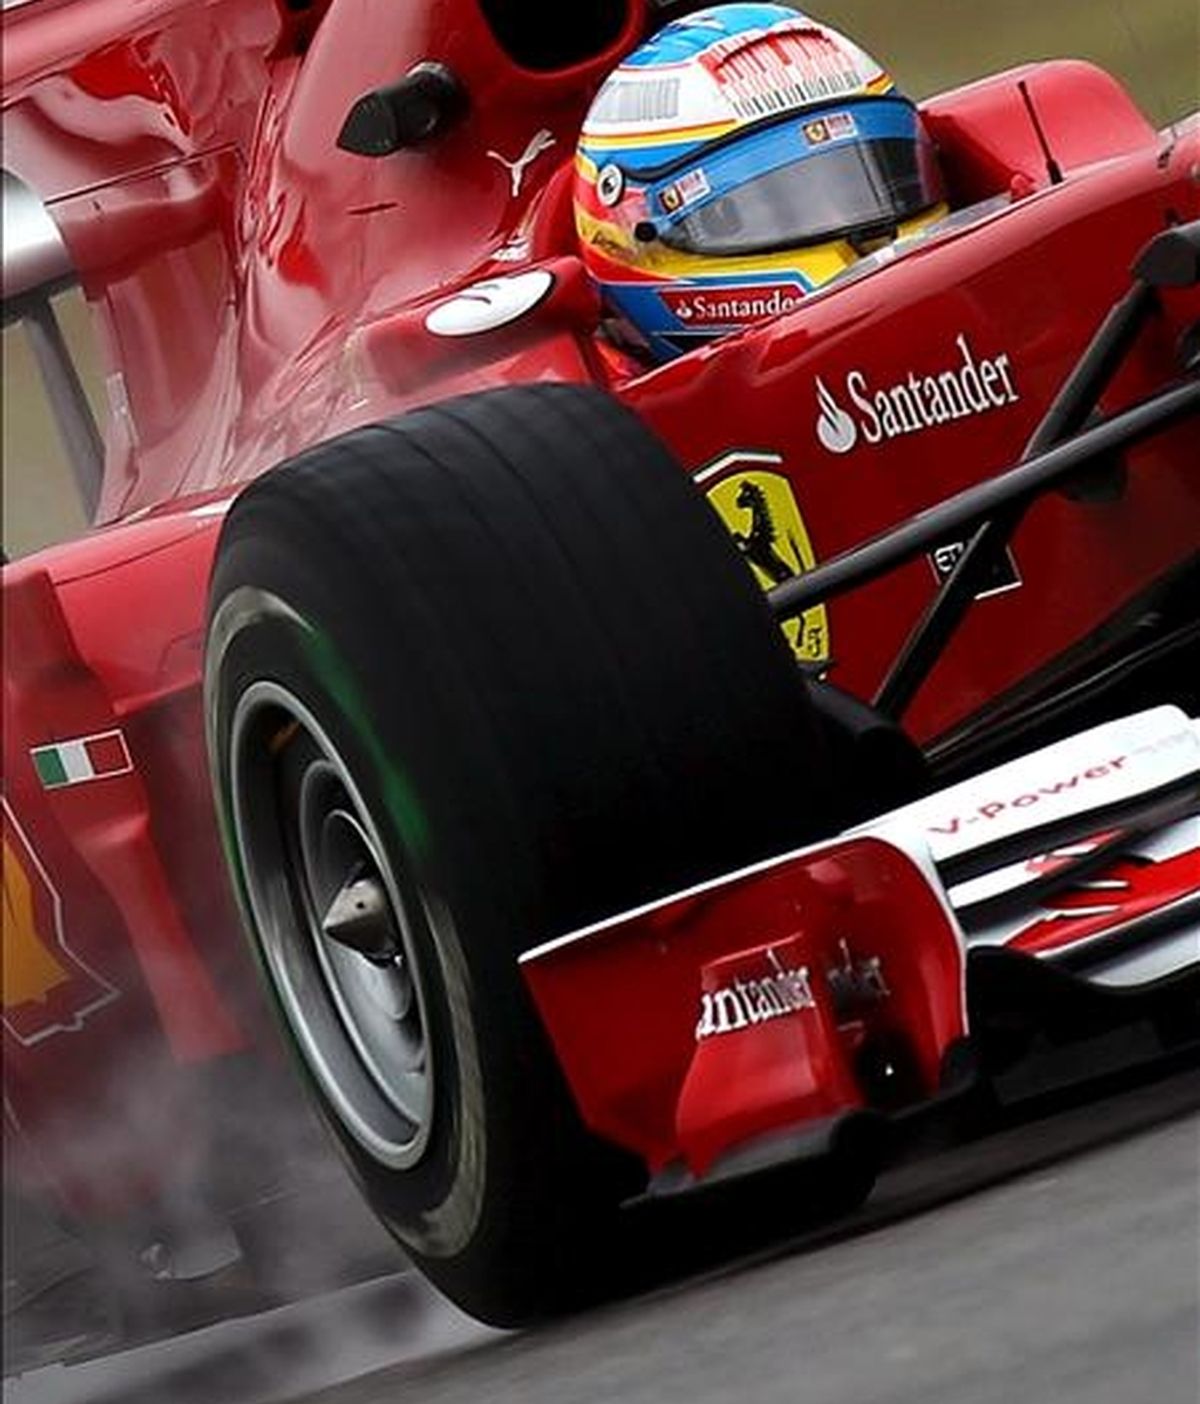 El piloto español de Fórmula Uno Fernando Alonso de Ferrari conduce su monoplaza en el circuito de Hockenheim durante la primera sesión de entrenamientos. El Gran Premio de Alemania se celebra el próximo domingo 25 de julio. EFE